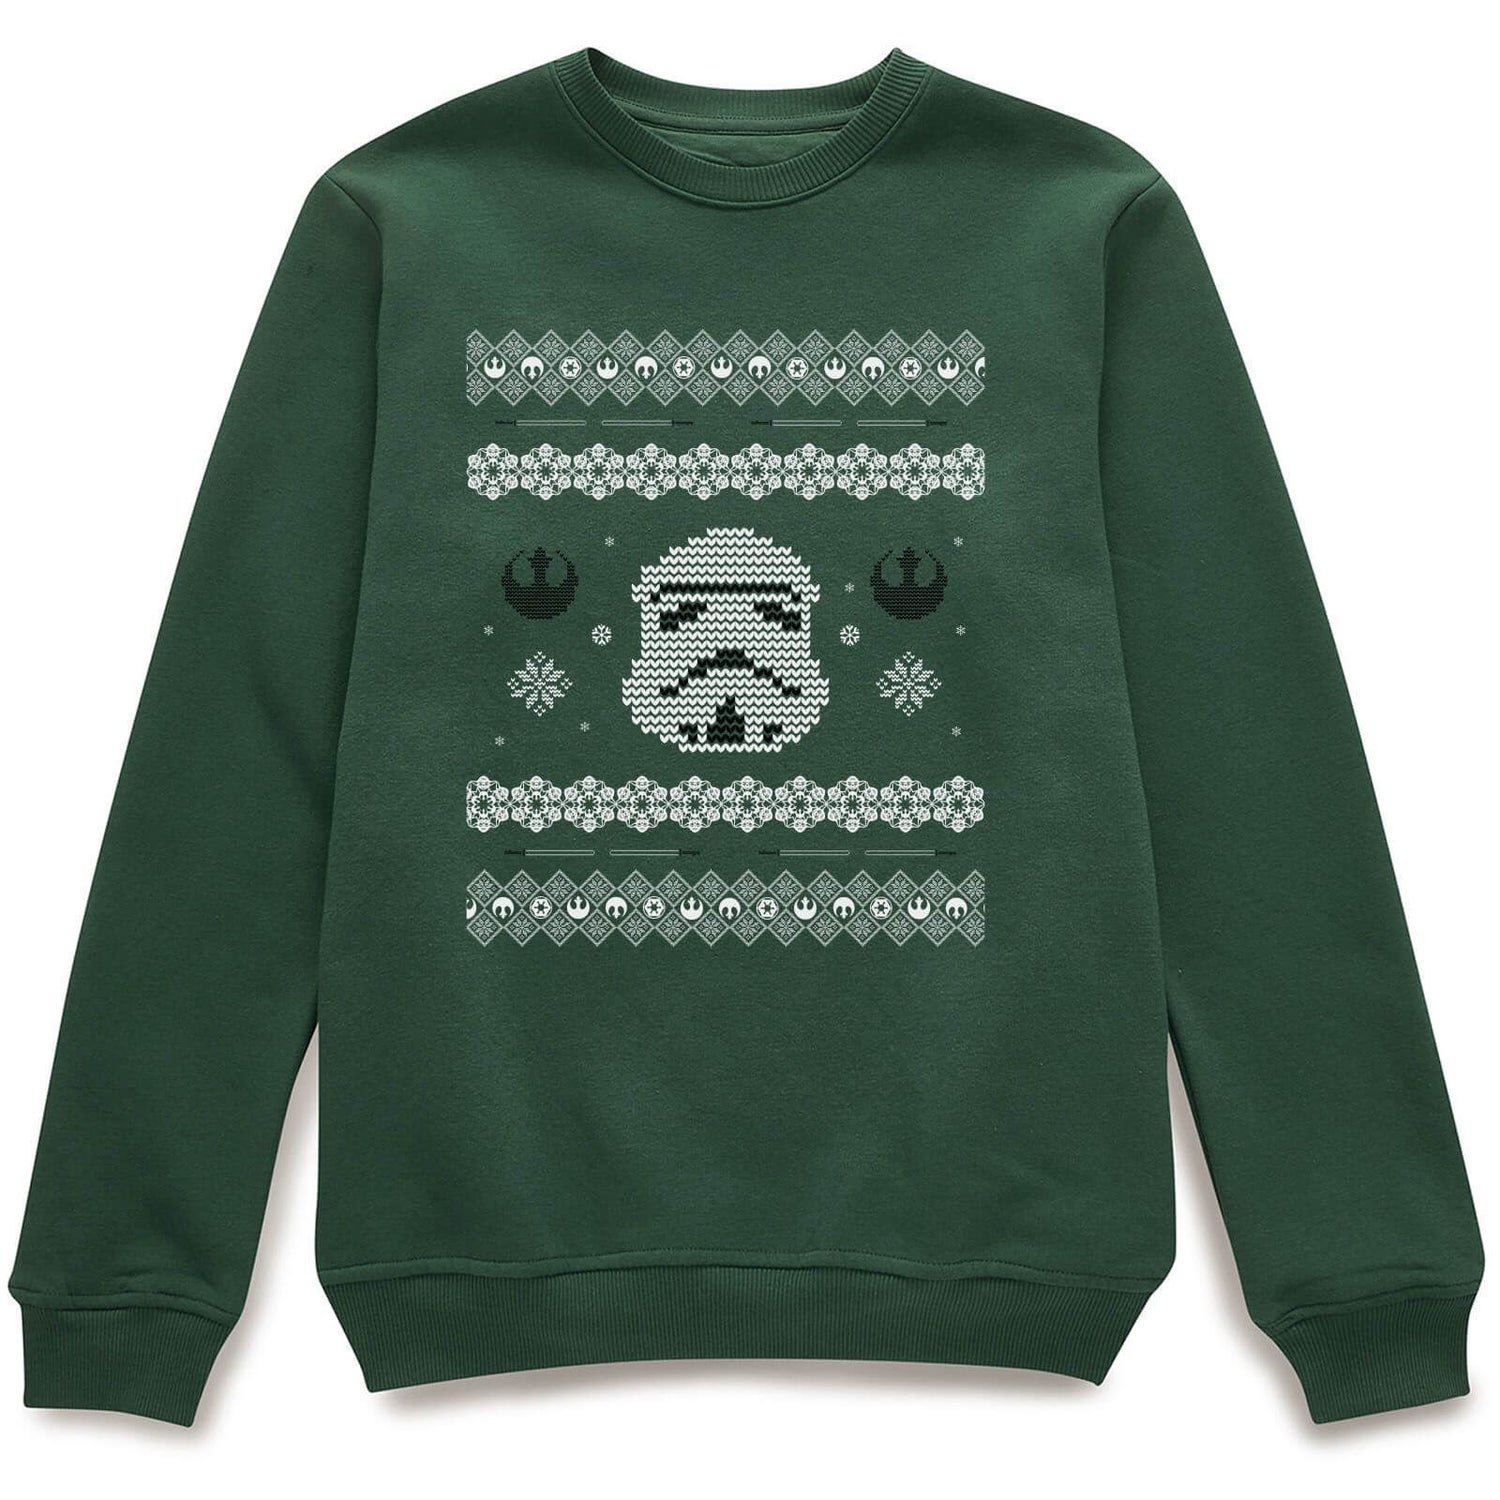 Star Wars Christmas Stormtrooper Weihnachtspullover - Grün